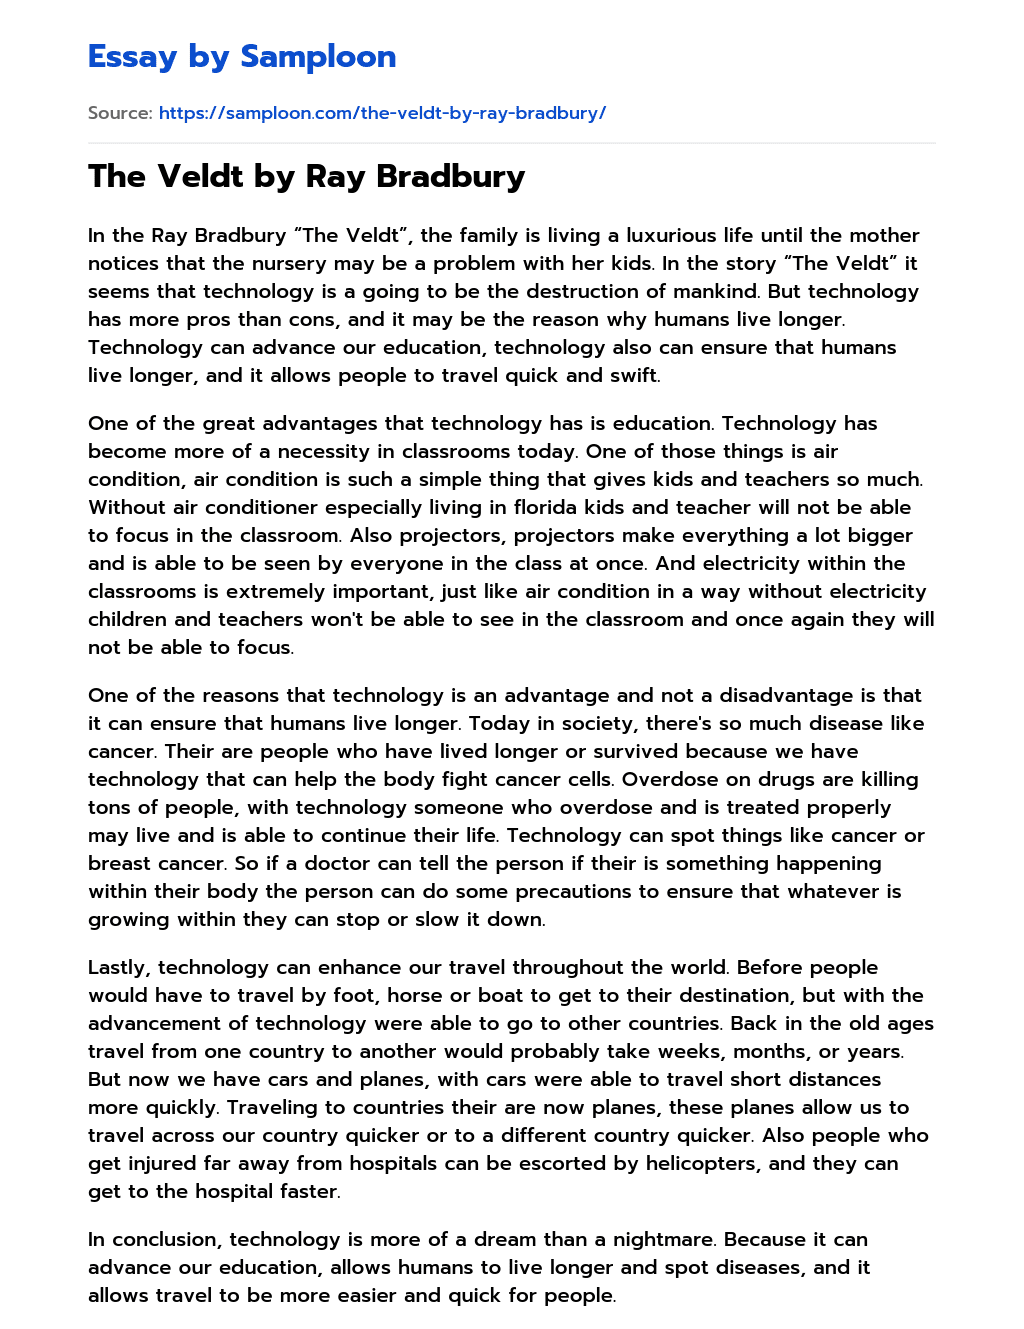 The Veldt by Ray Bradbury essay